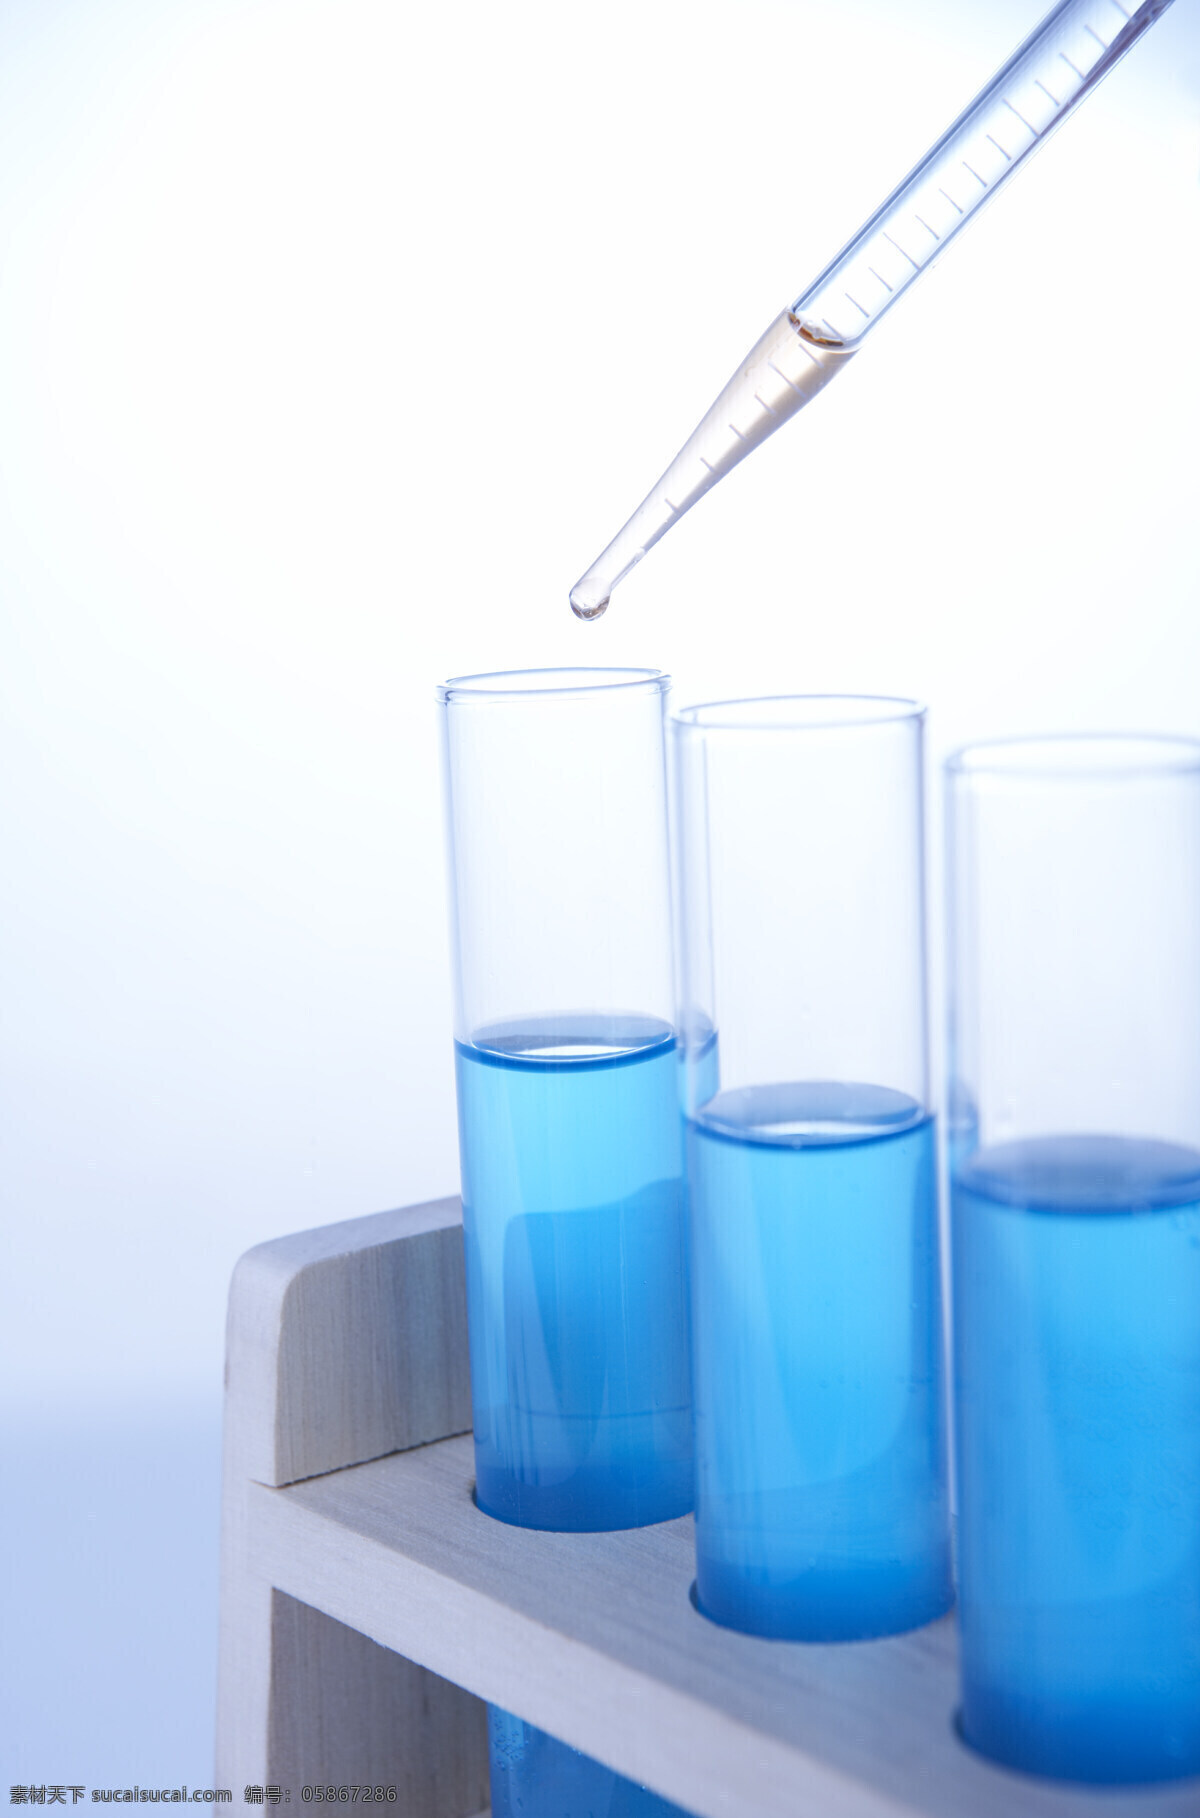 科学研究 试管 现代科技 医疗护理 试管实验 试管架 玻璃试管 彩色试管 彩色液体 蓝色液体 生物样本 生物科学 生物研究 生物实验室 科学医疗 矢量图